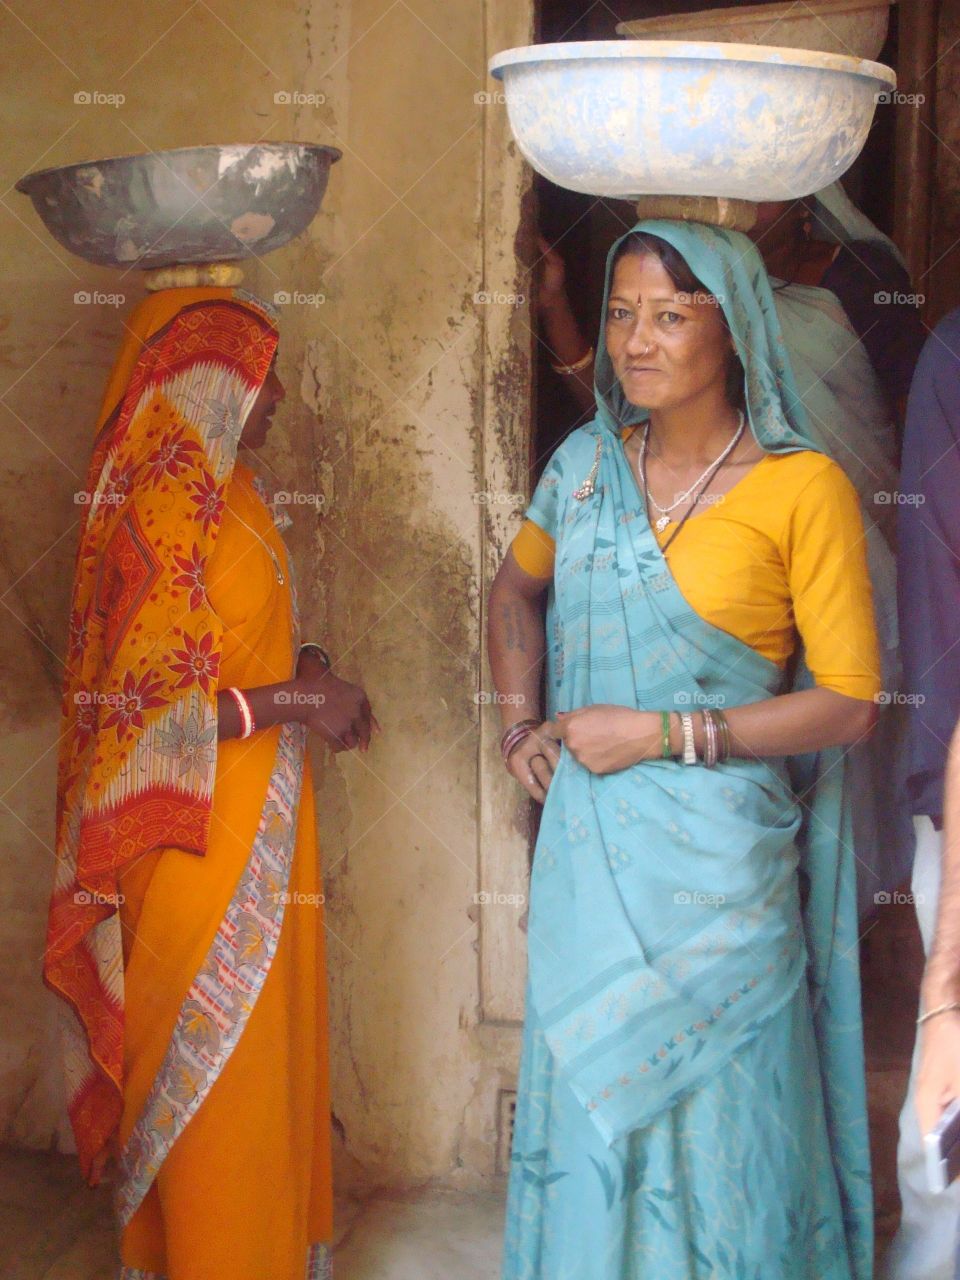 Two women carrying water